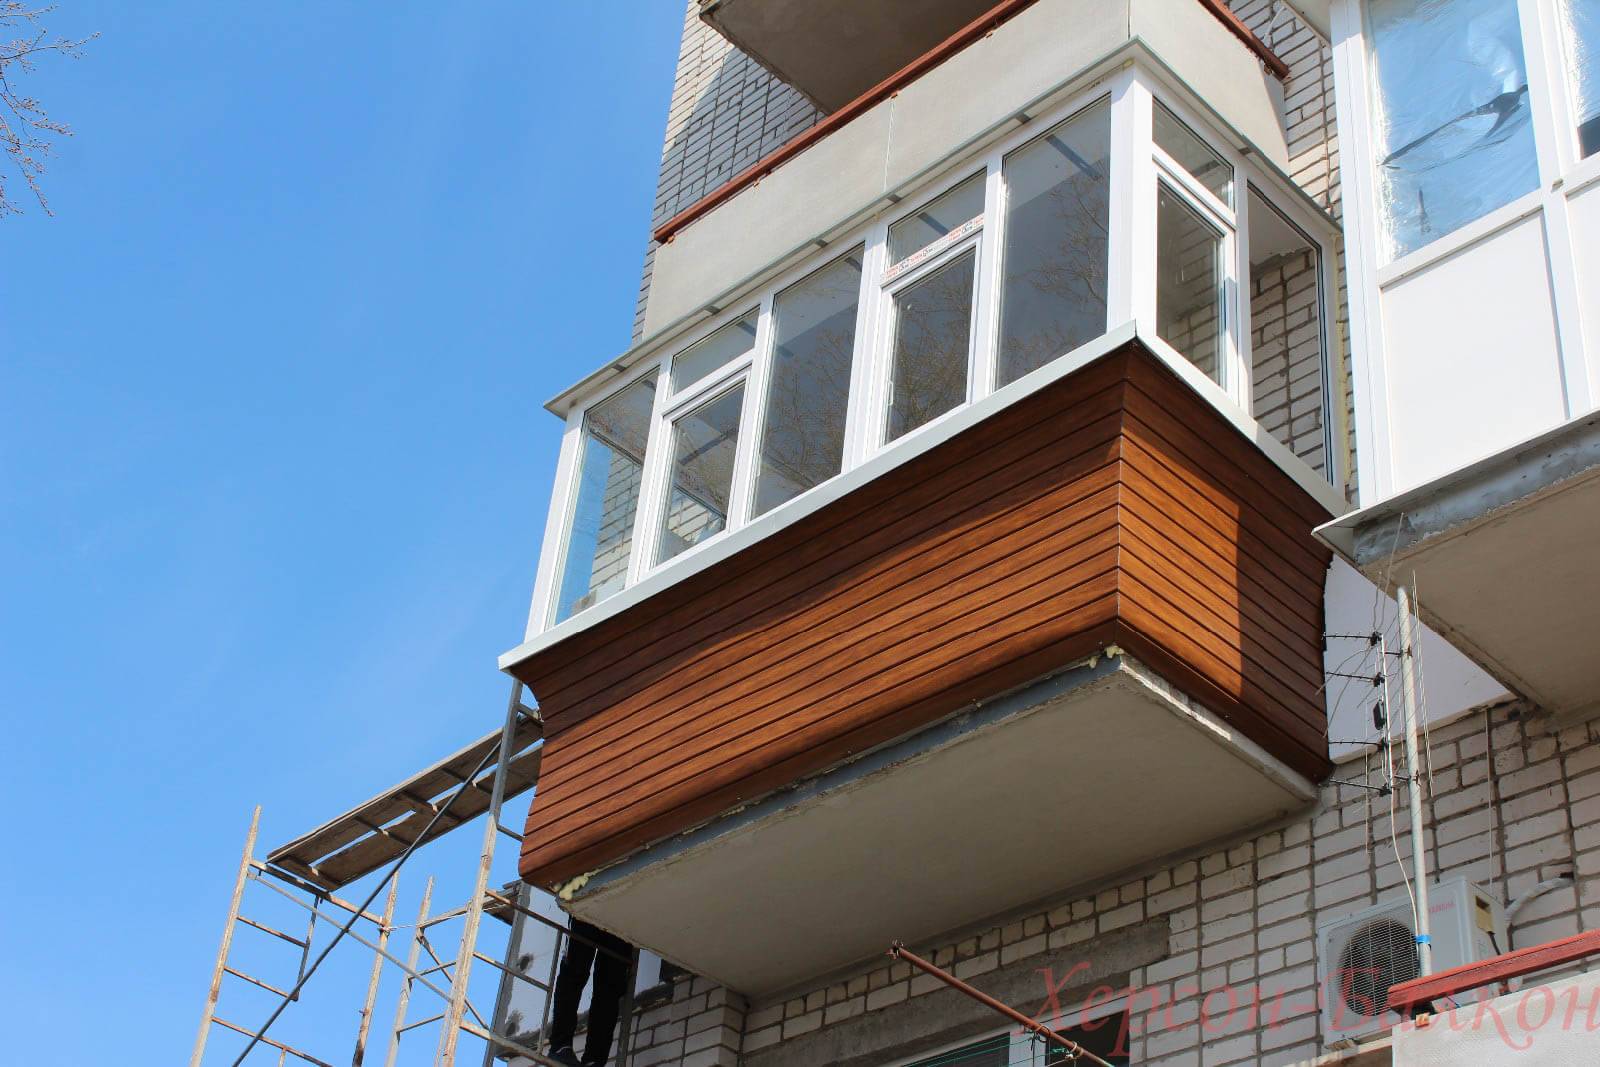 Как застеклить балкон пластиковыми окнами — освещаем по порядку